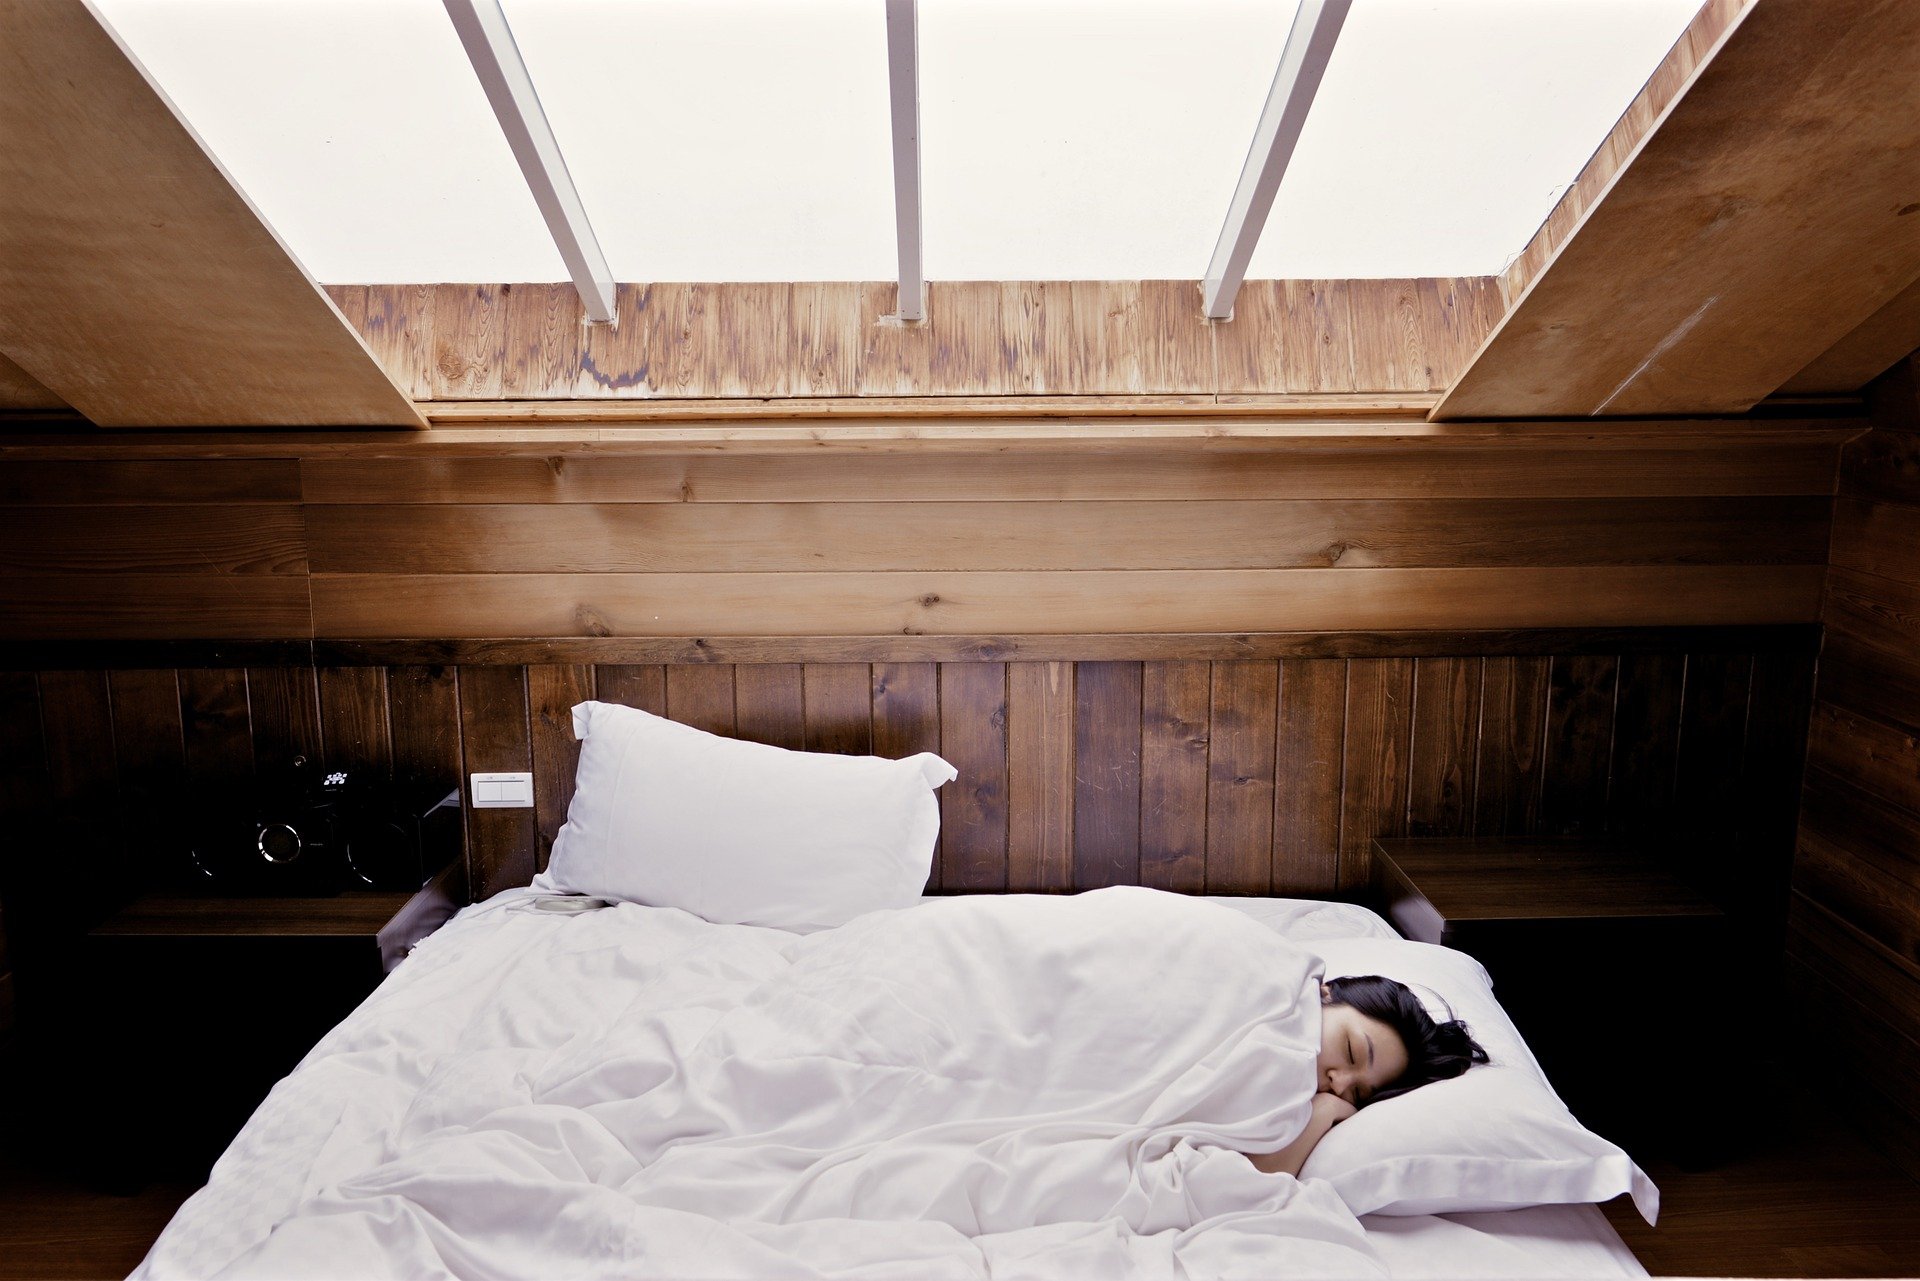 Użytkowanie łóżka stanie się jeszcze bardziej komfortowe przy możliwości regulowania zagłówka